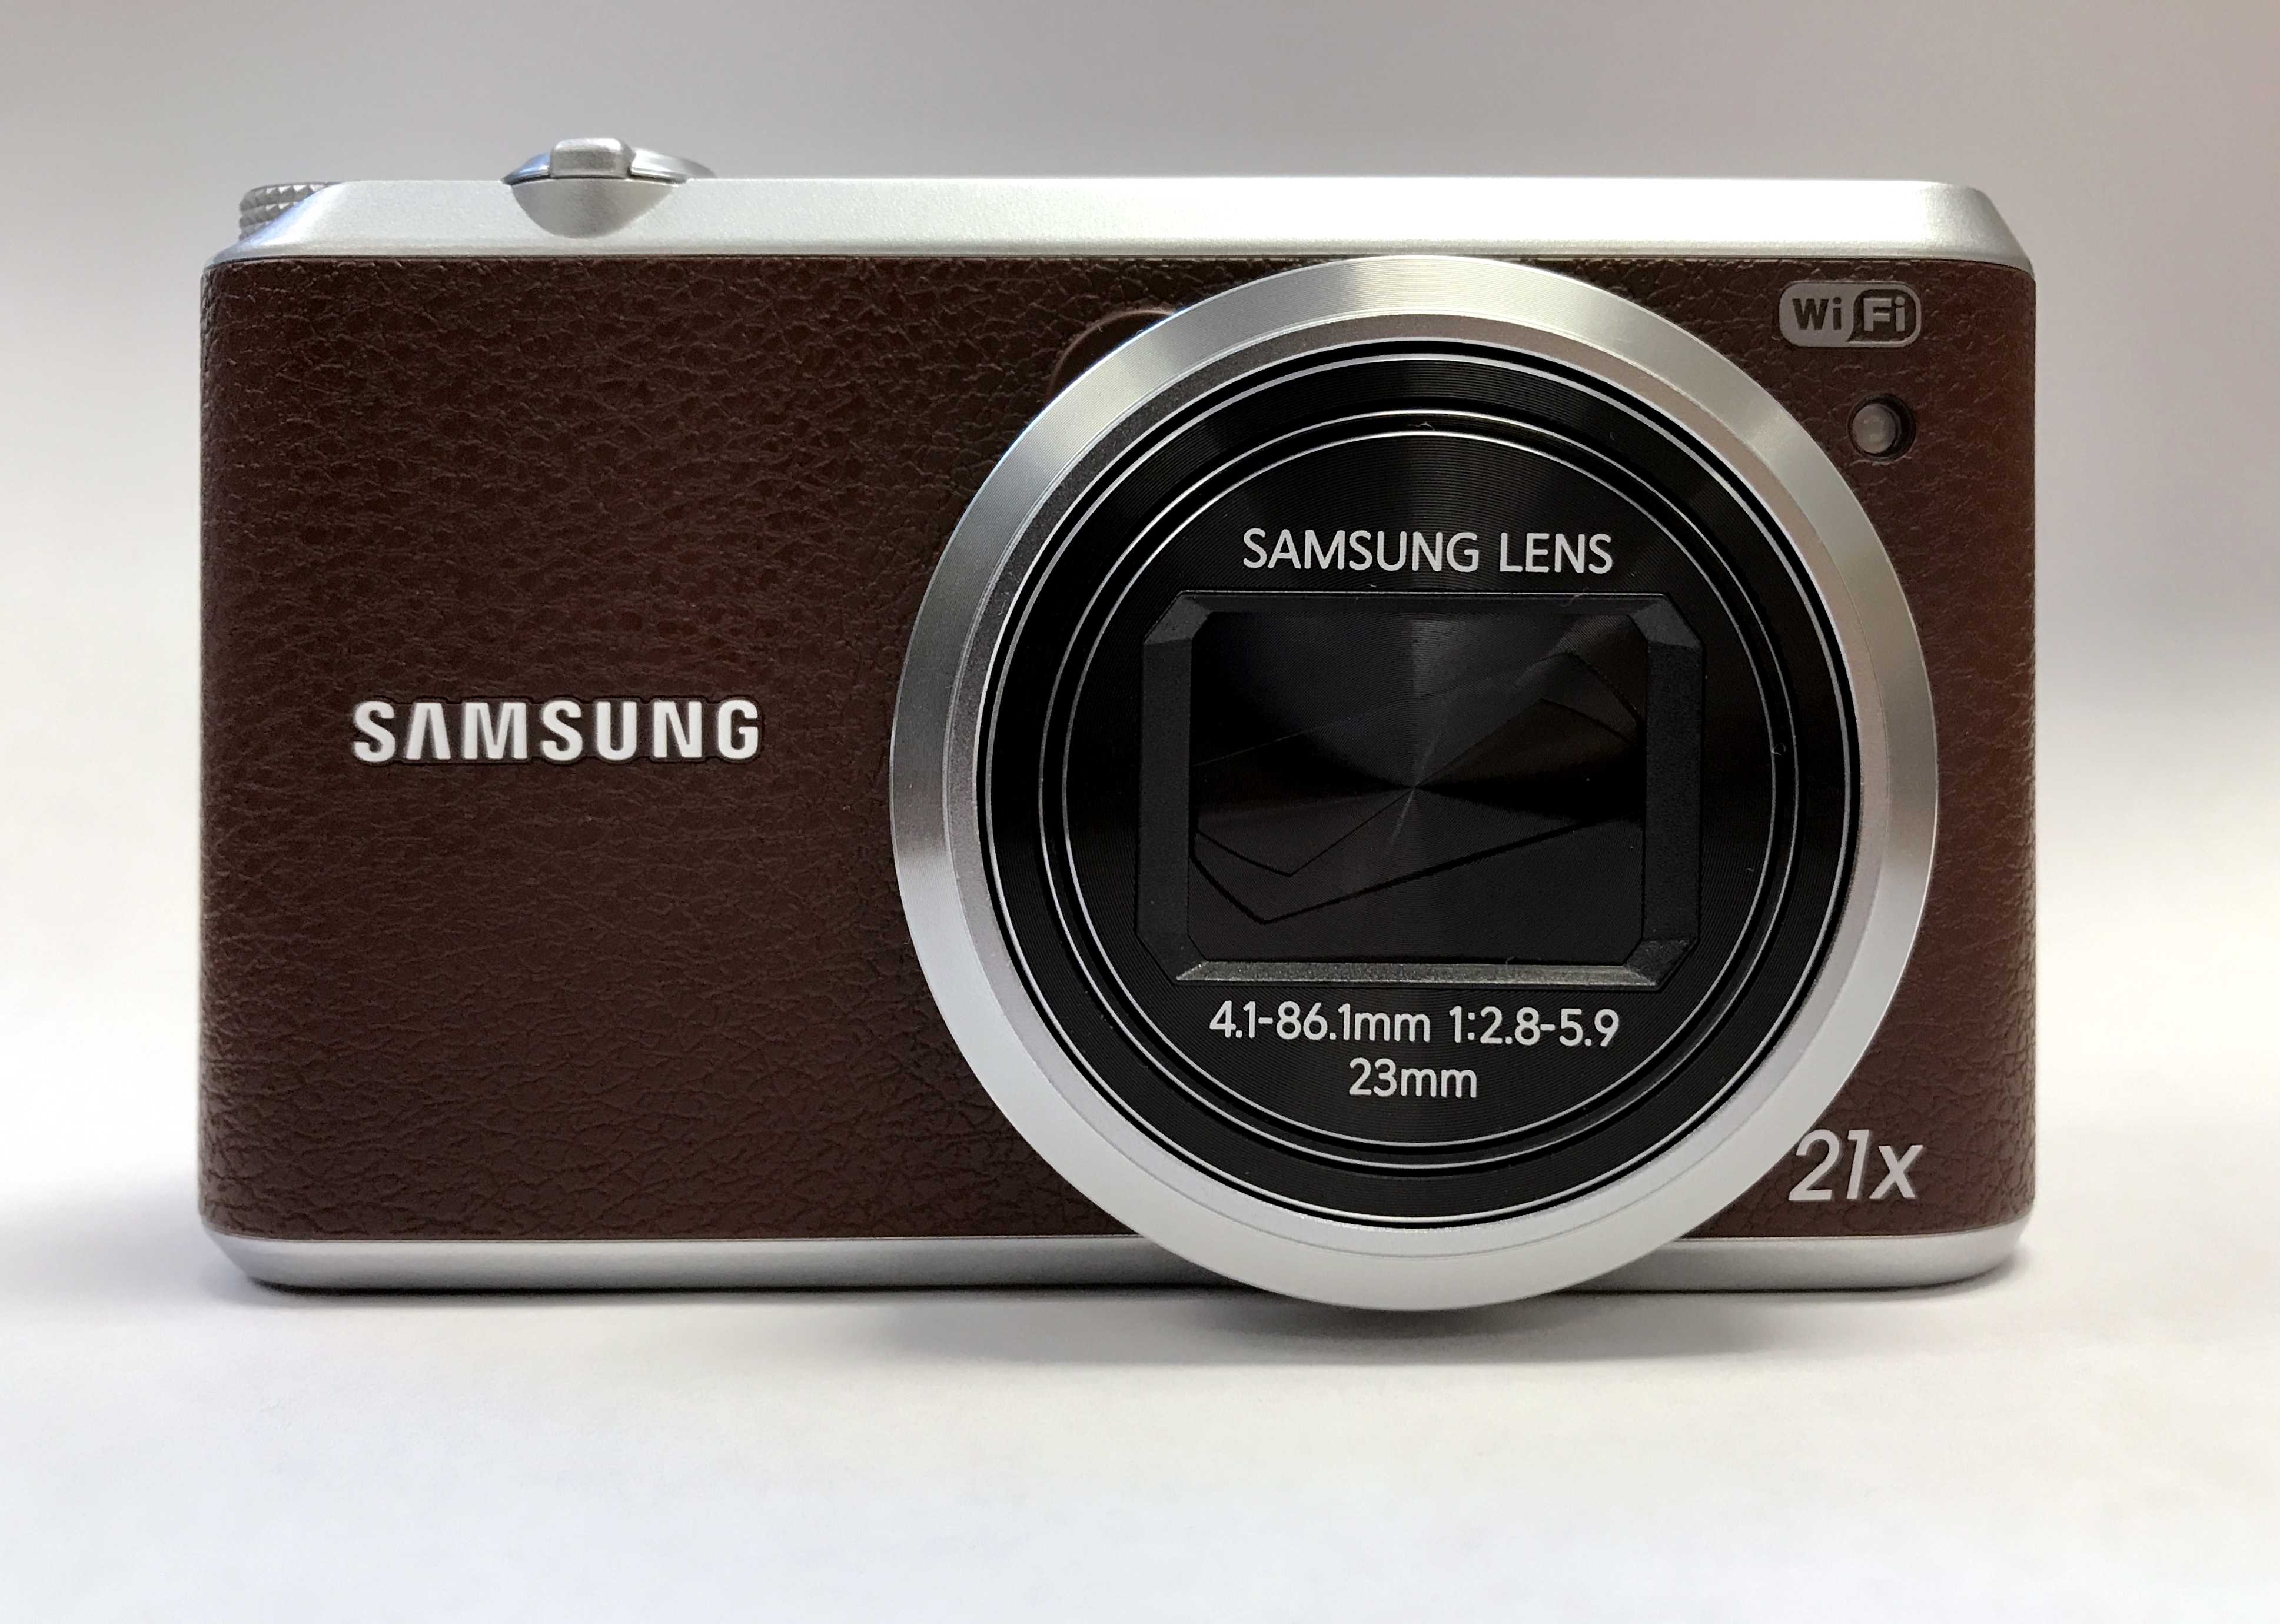 Обзор samsung wb350f – компактный фотоаппарат от samsung